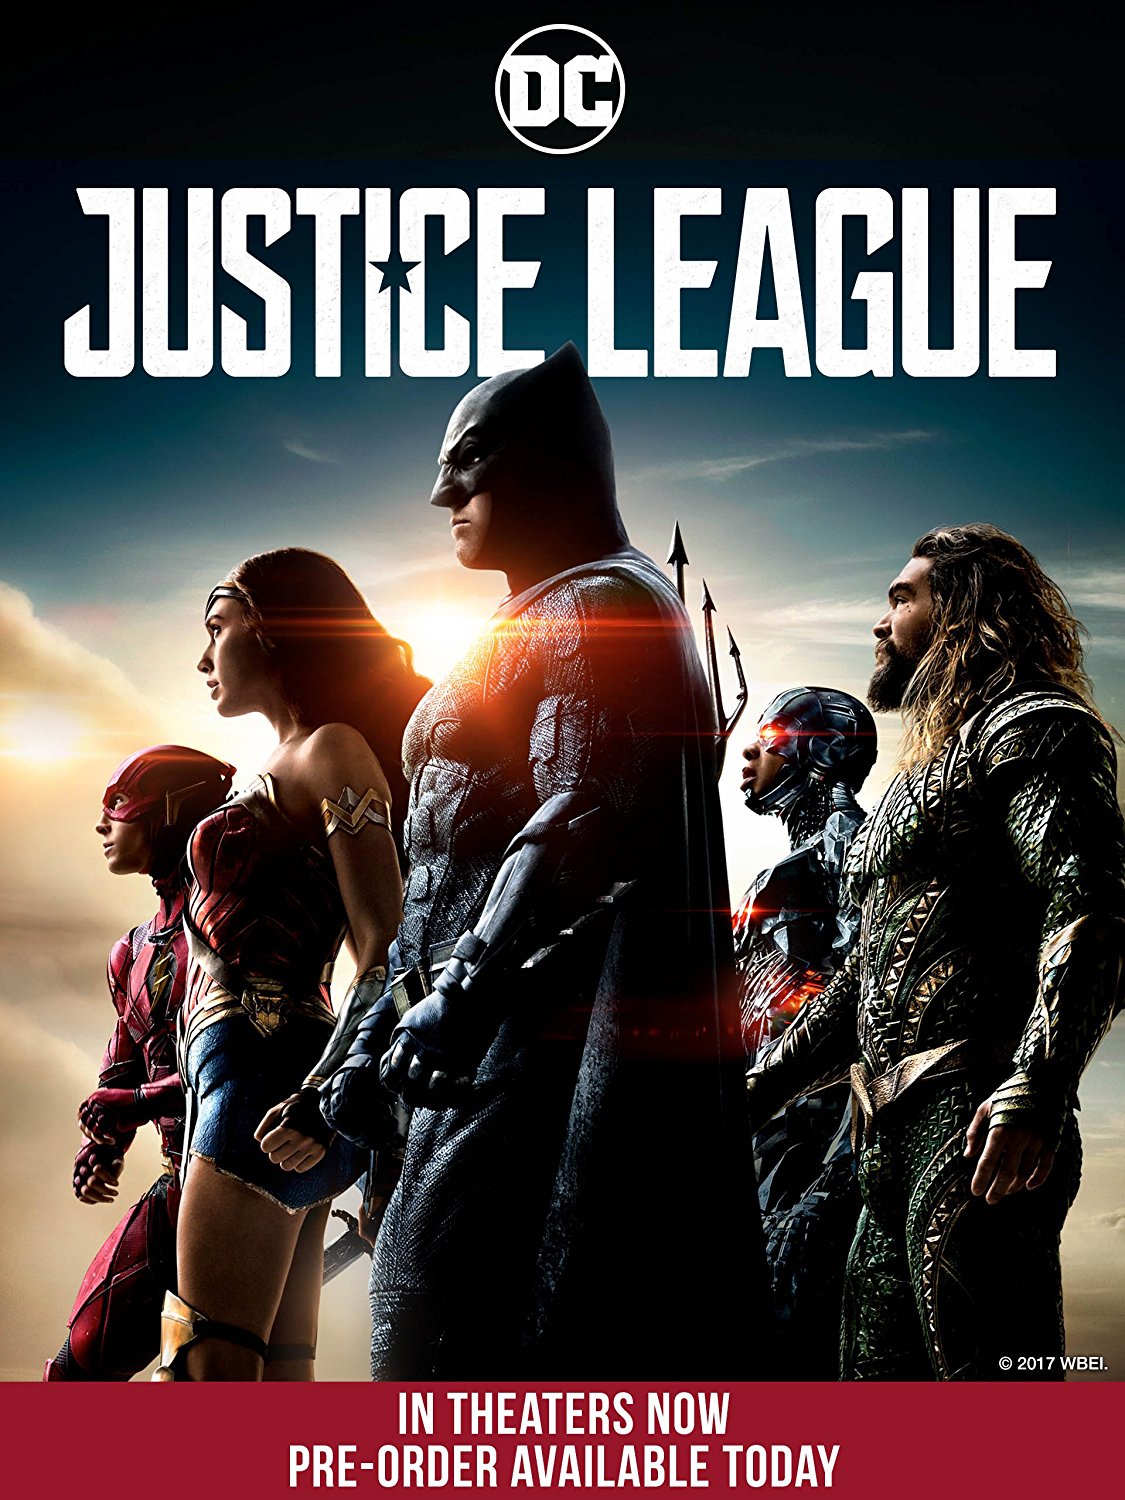 Justice League digital release